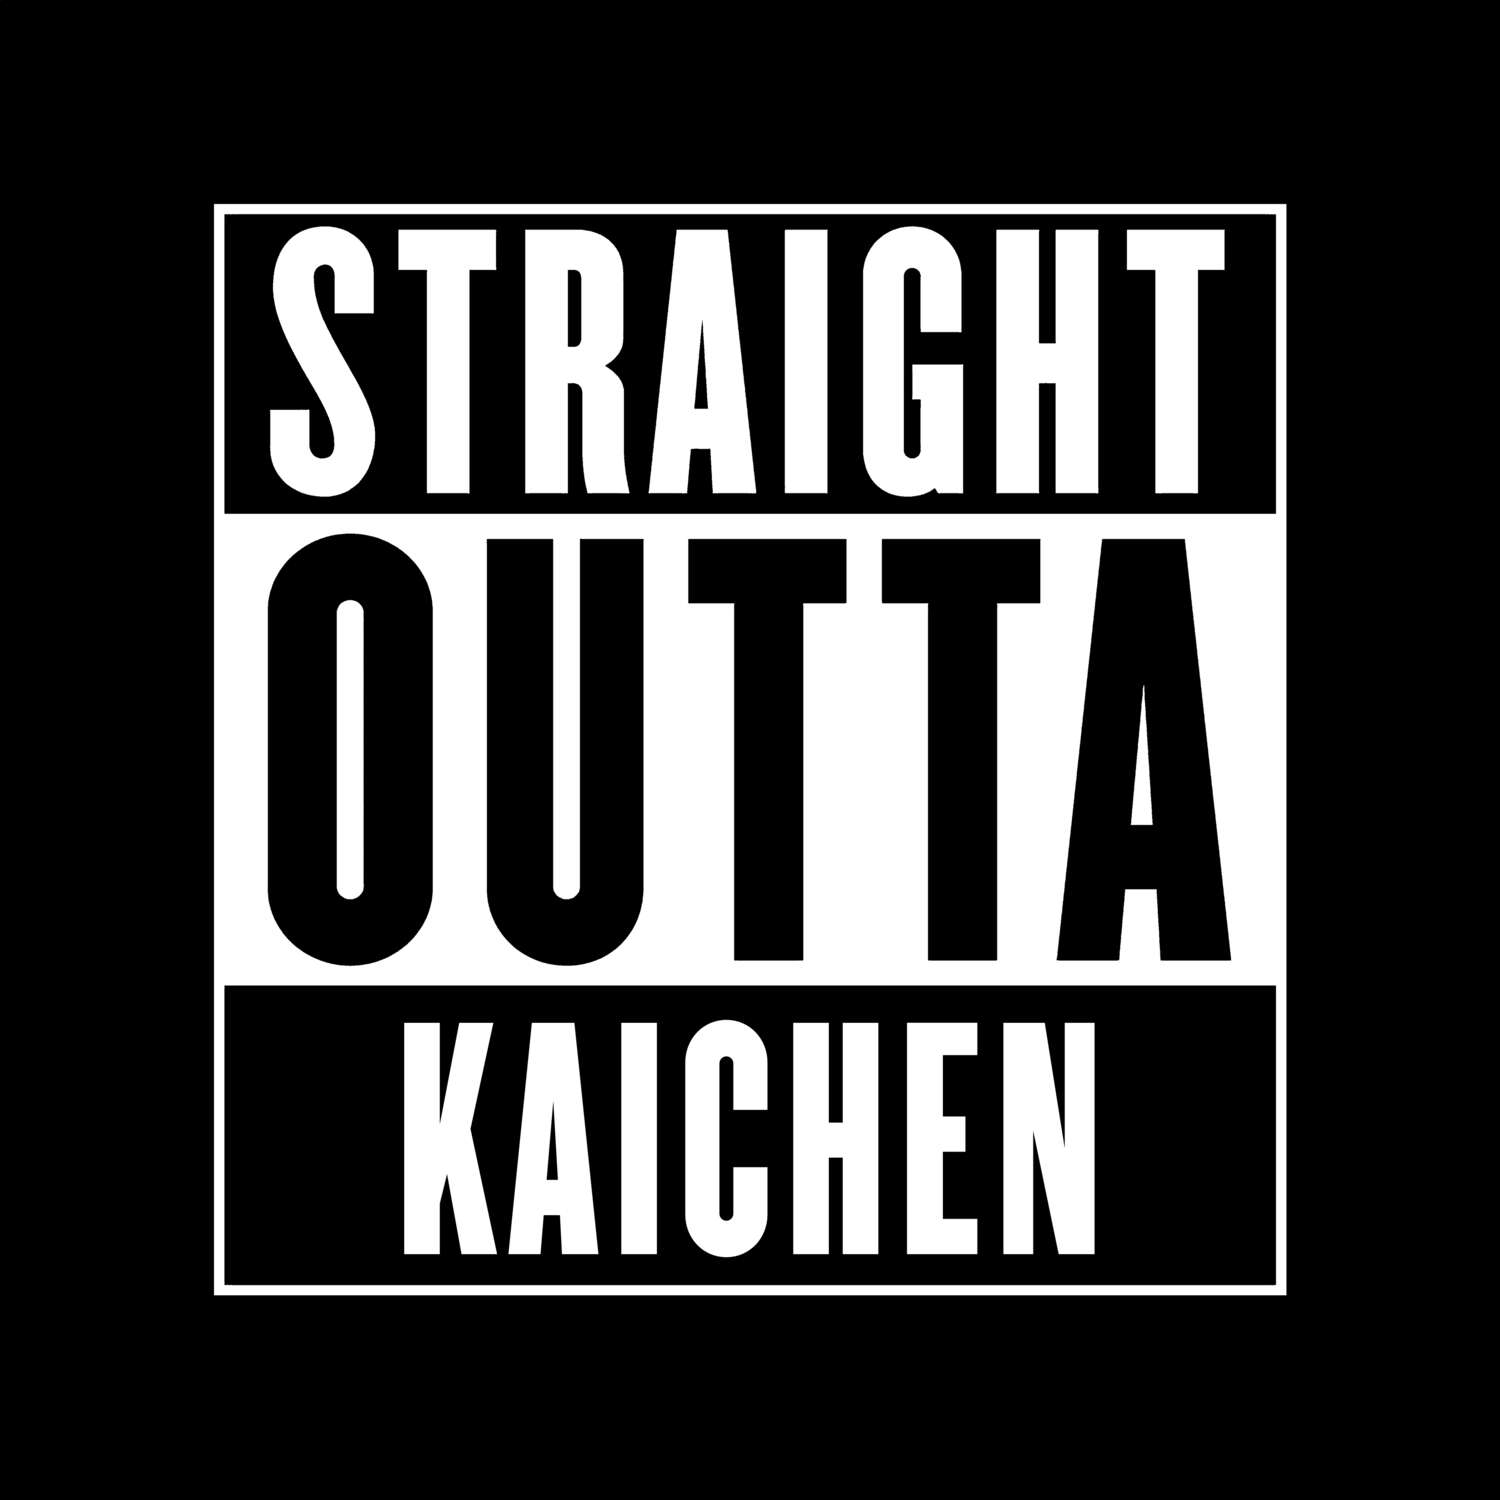 Kaichen T-Shirt »Straight Outta«